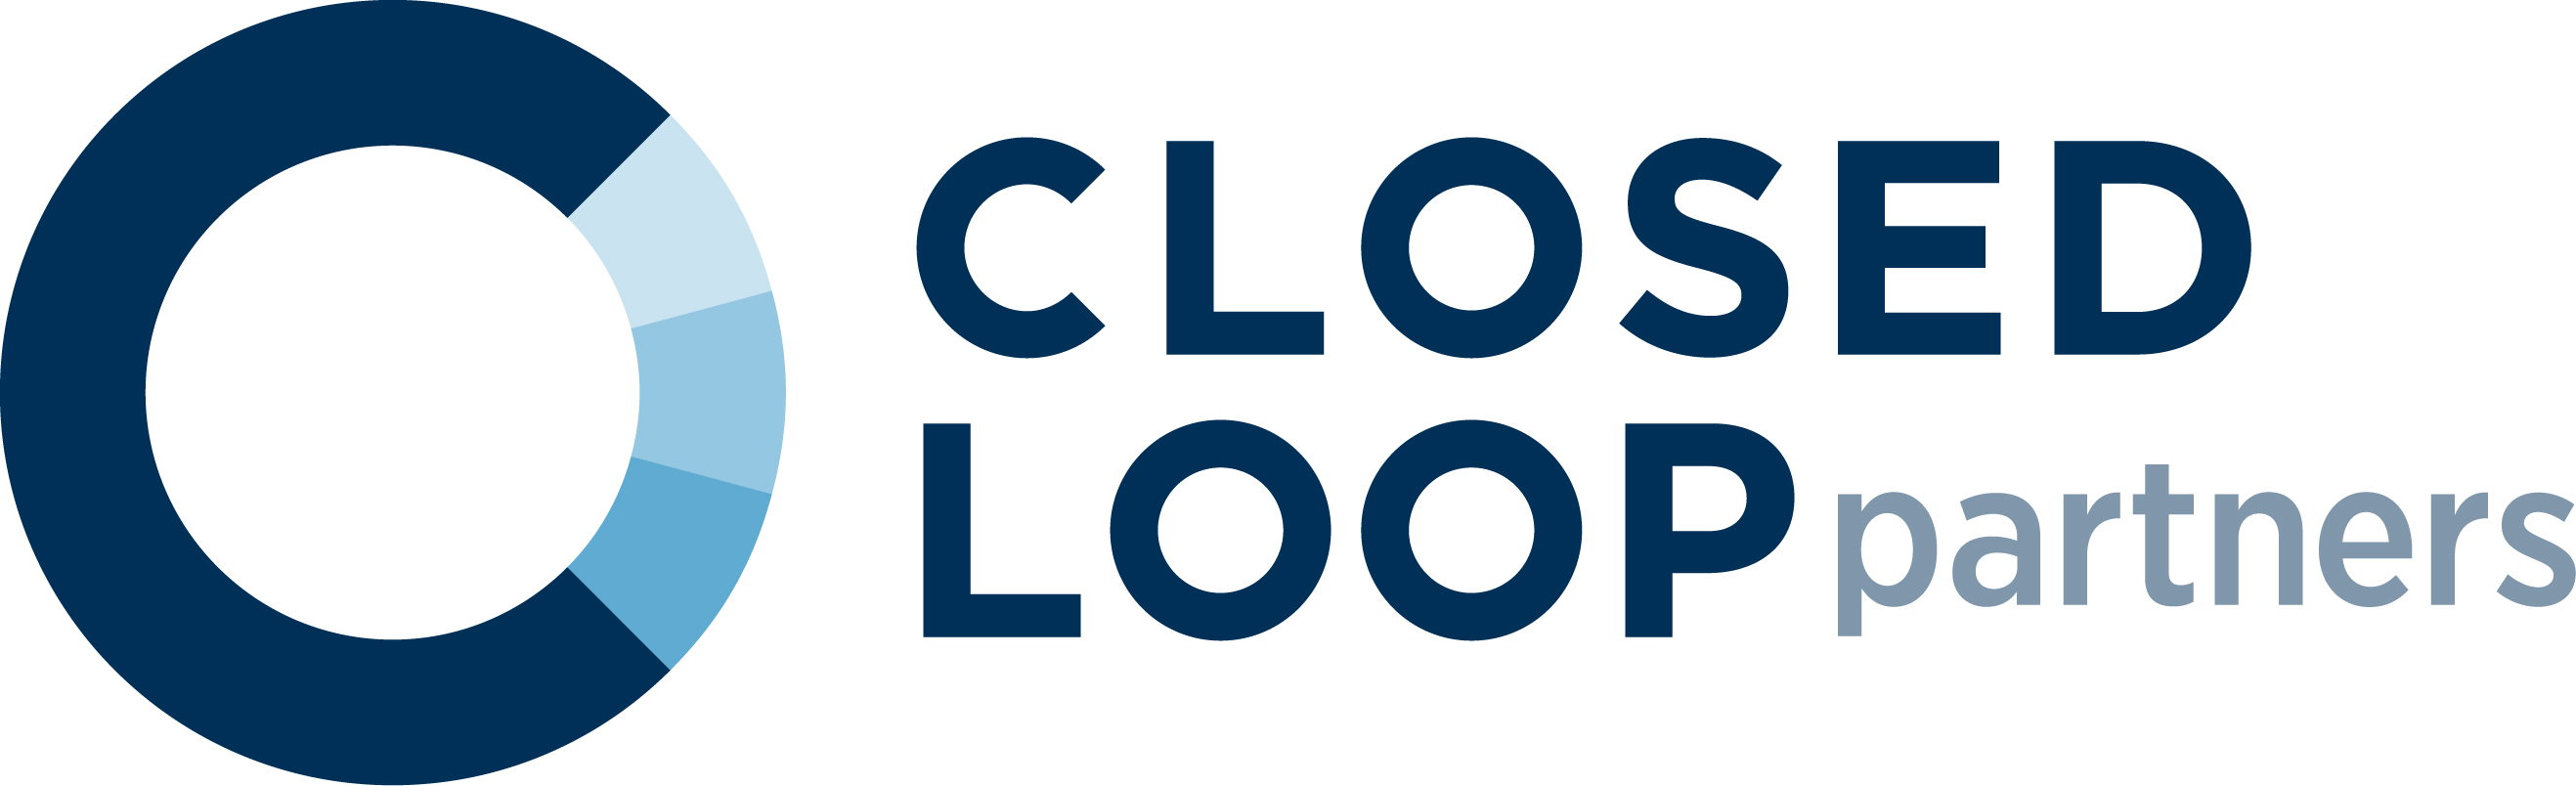 Closed Loop partners logo.